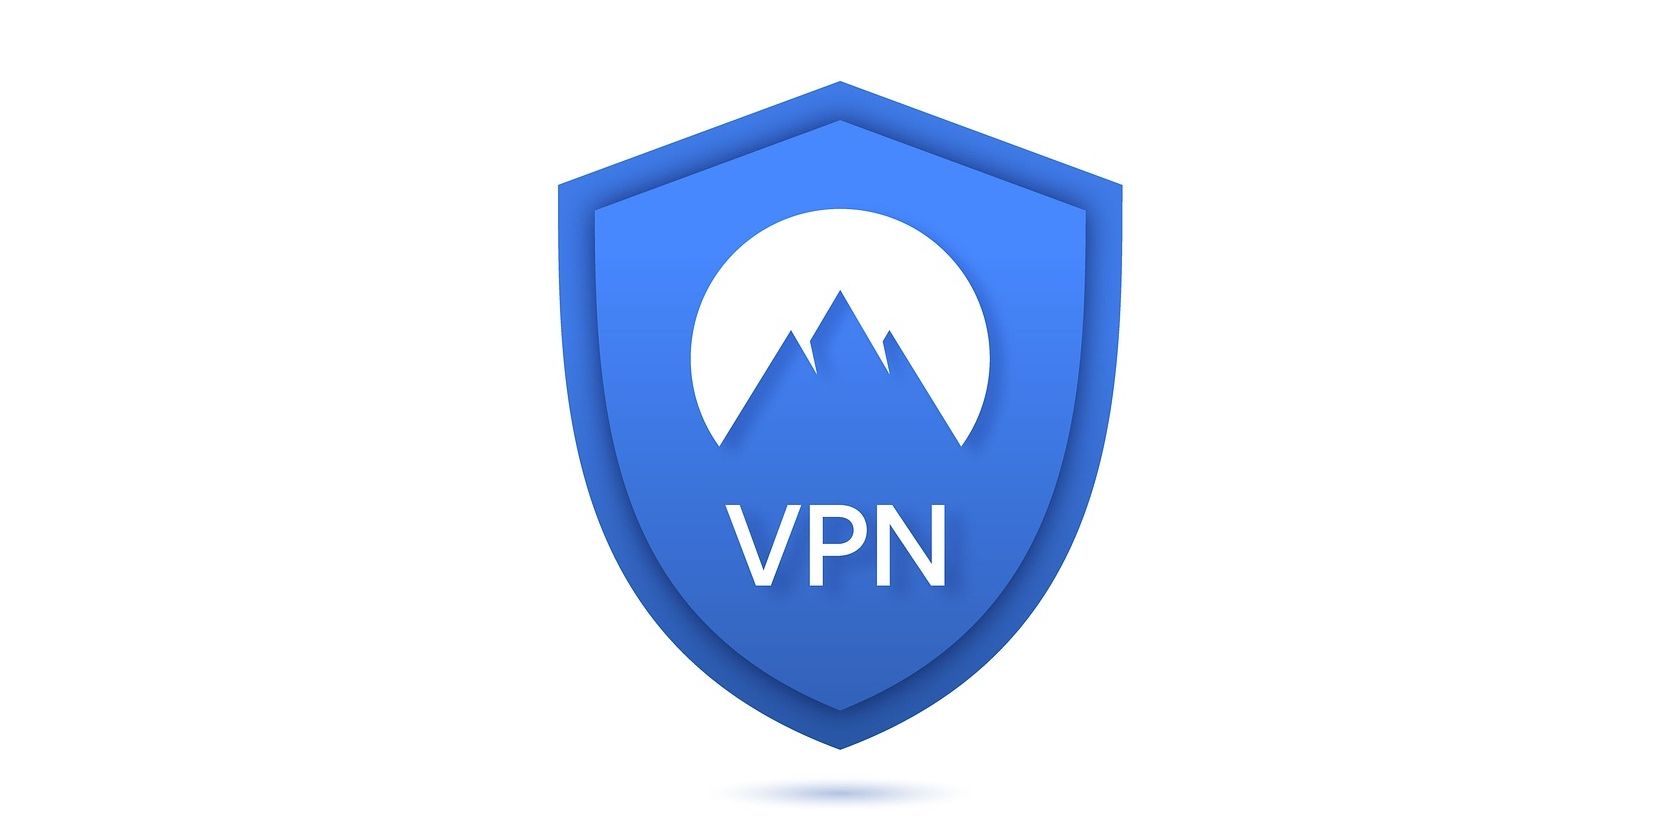 Kan ransomware spre seg gjennom VPN?